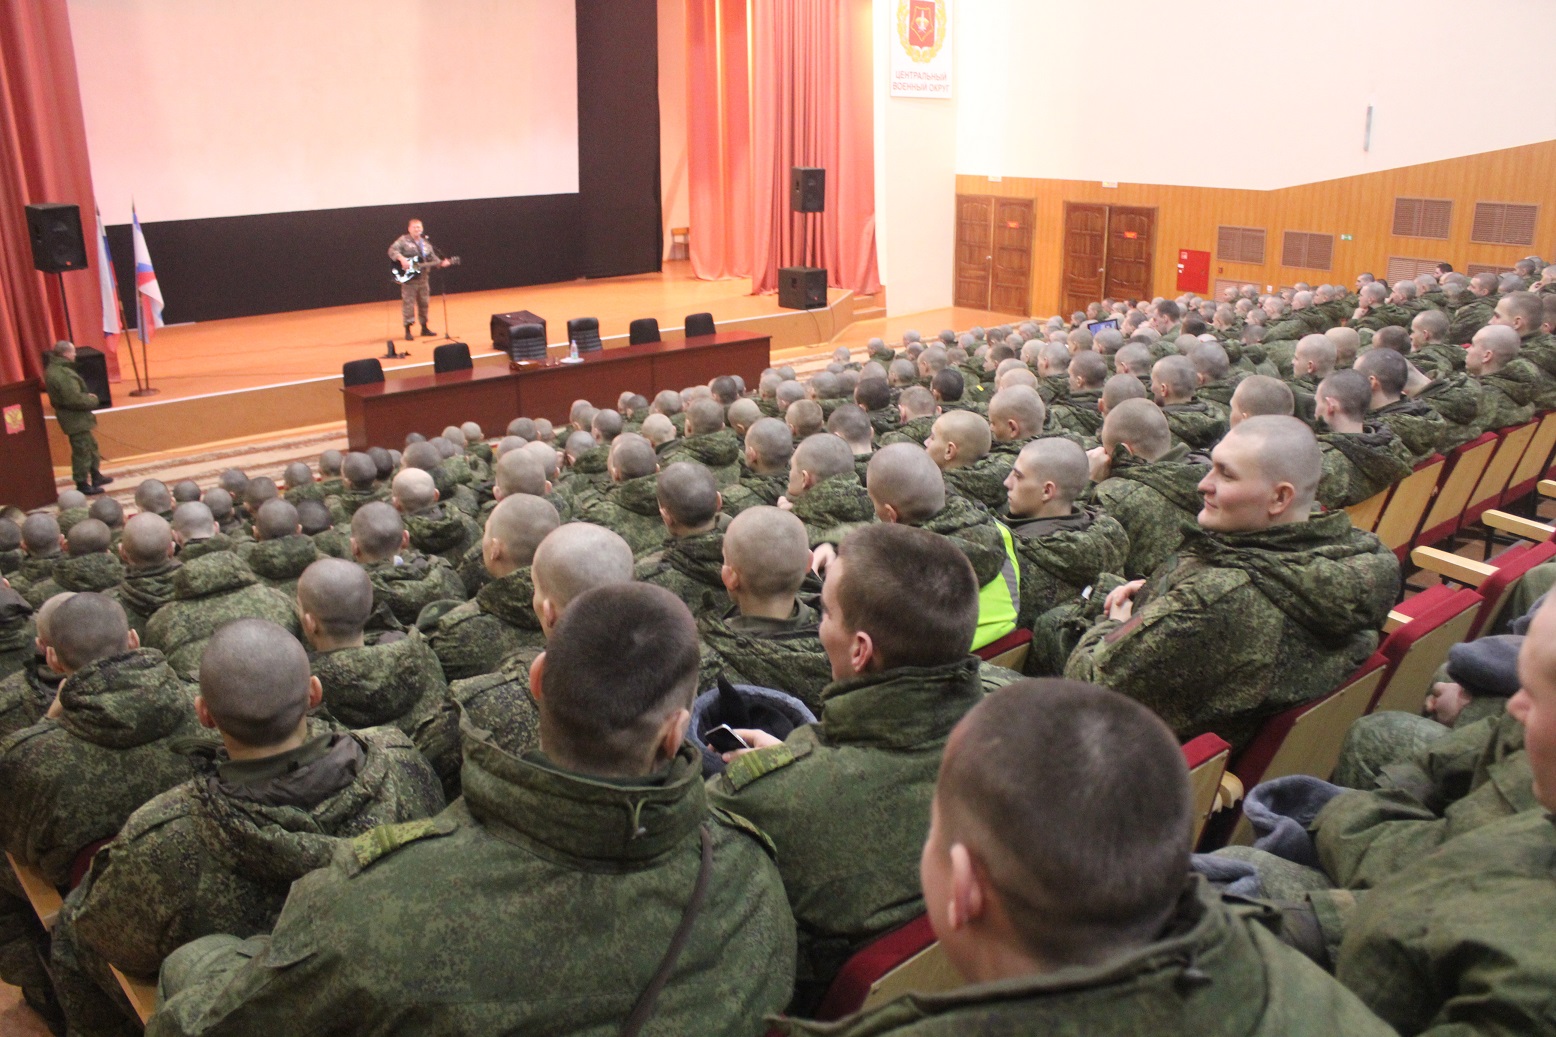 Как живут солдаты в российской армии - 23 февраля 2016 года